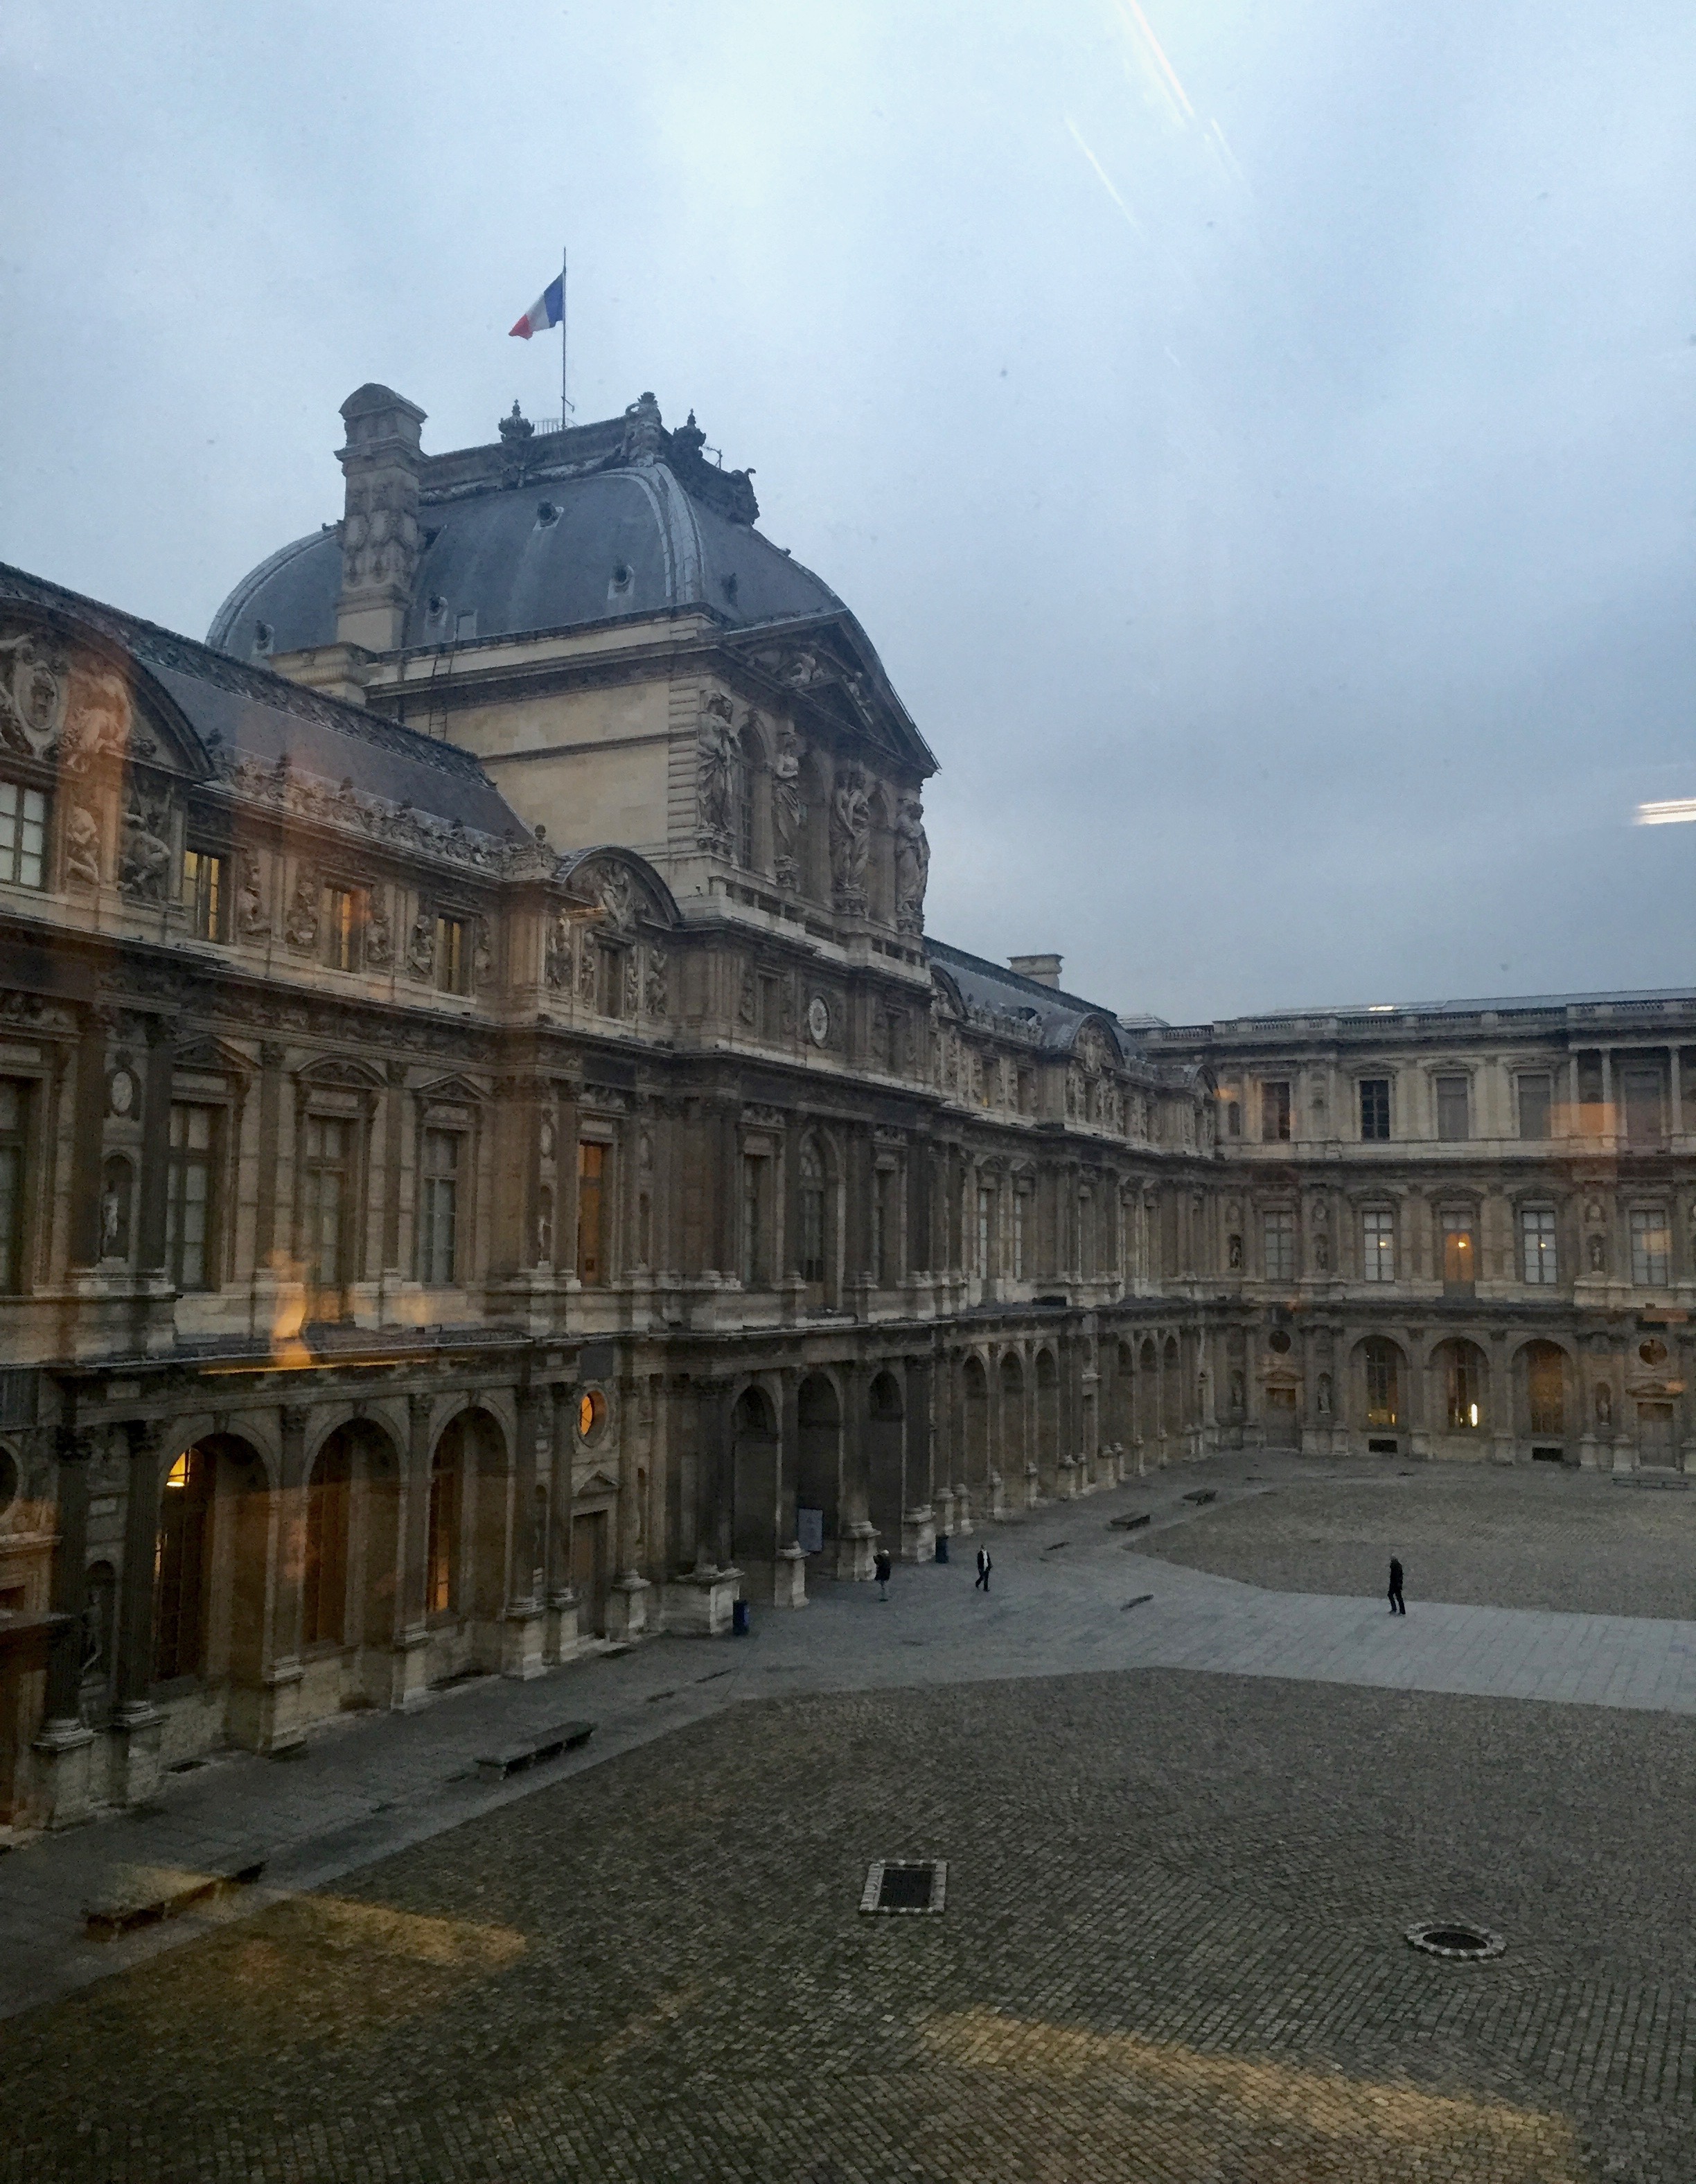 Le Louvre Courtyard   photo by L.D. Van Cleave